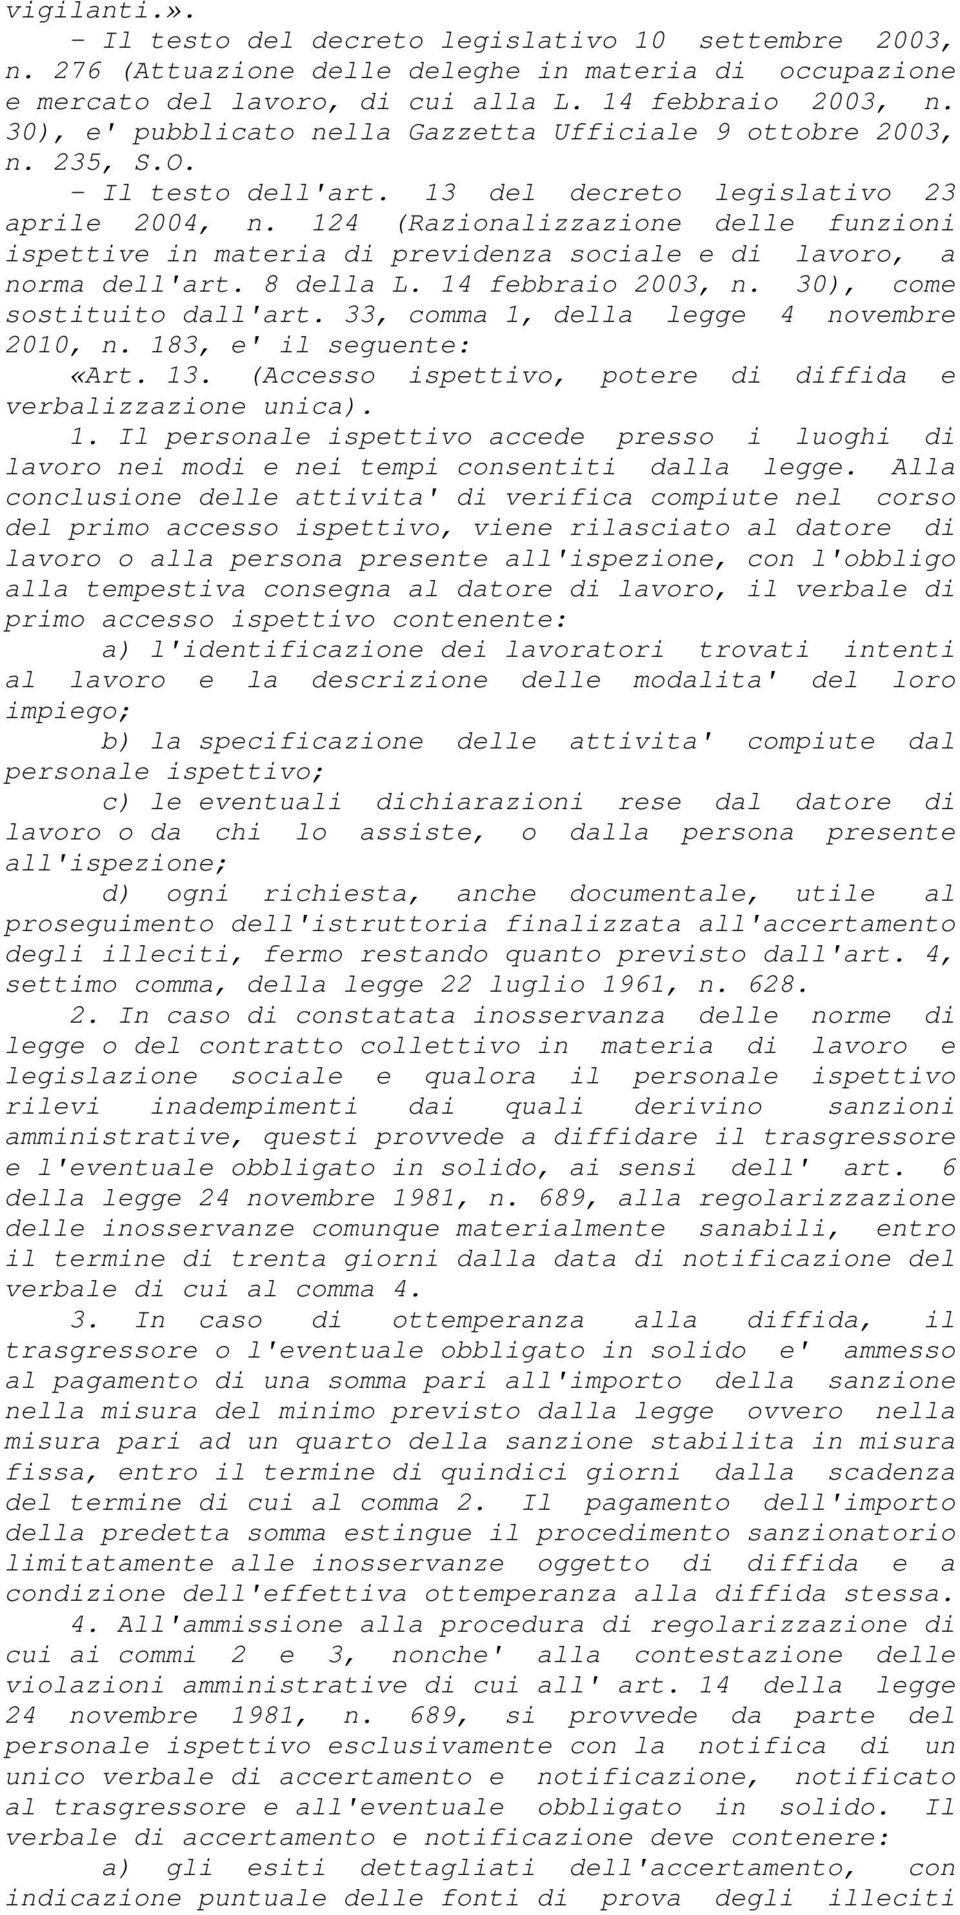 124 (Razionalizzazione delle funzioni ispettive in materia di previdenza sociale e di lavoro, a norma dell'art. 8 della L. 14 febbraio 2003, n. 30), come sostituito dall'art.